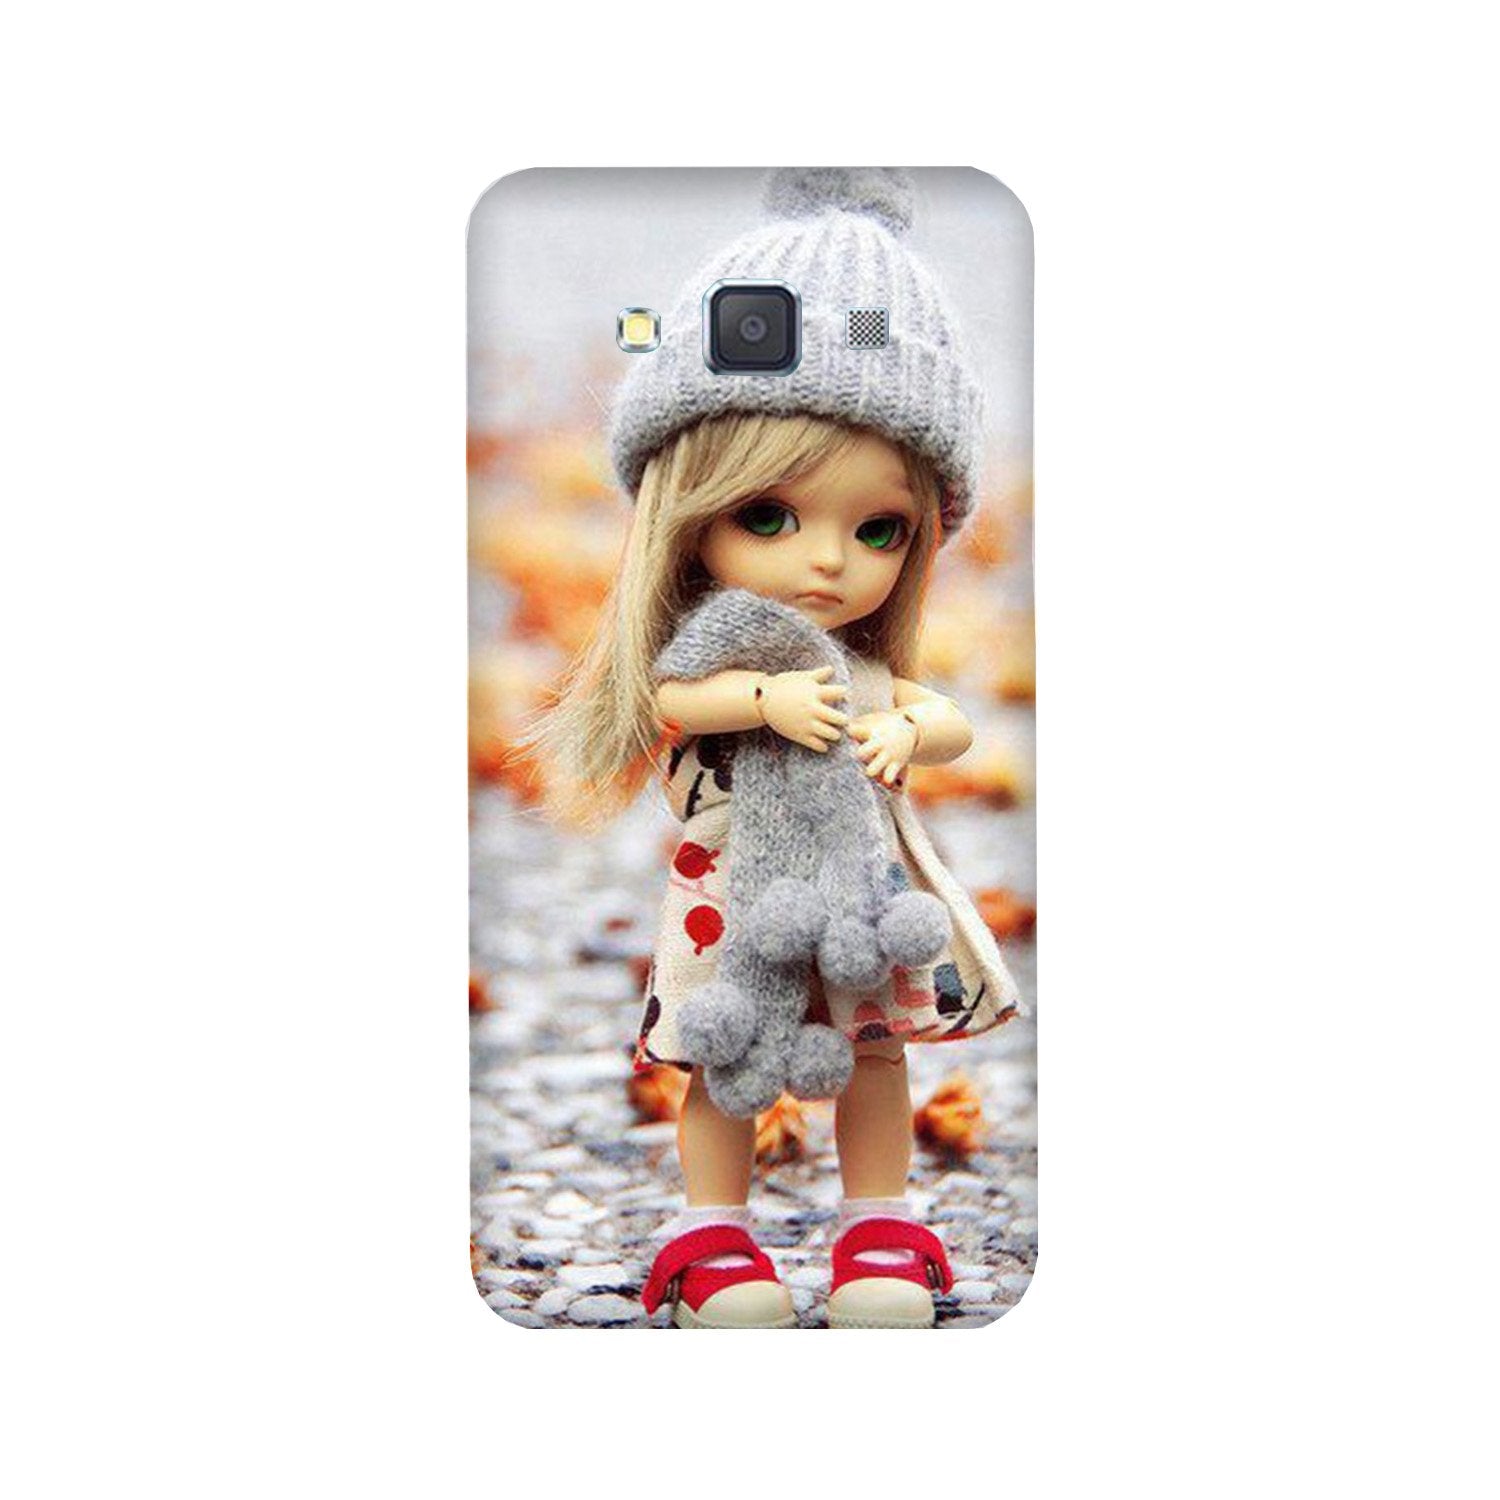 Cute Doll Case for Galaxy A5 (2015)